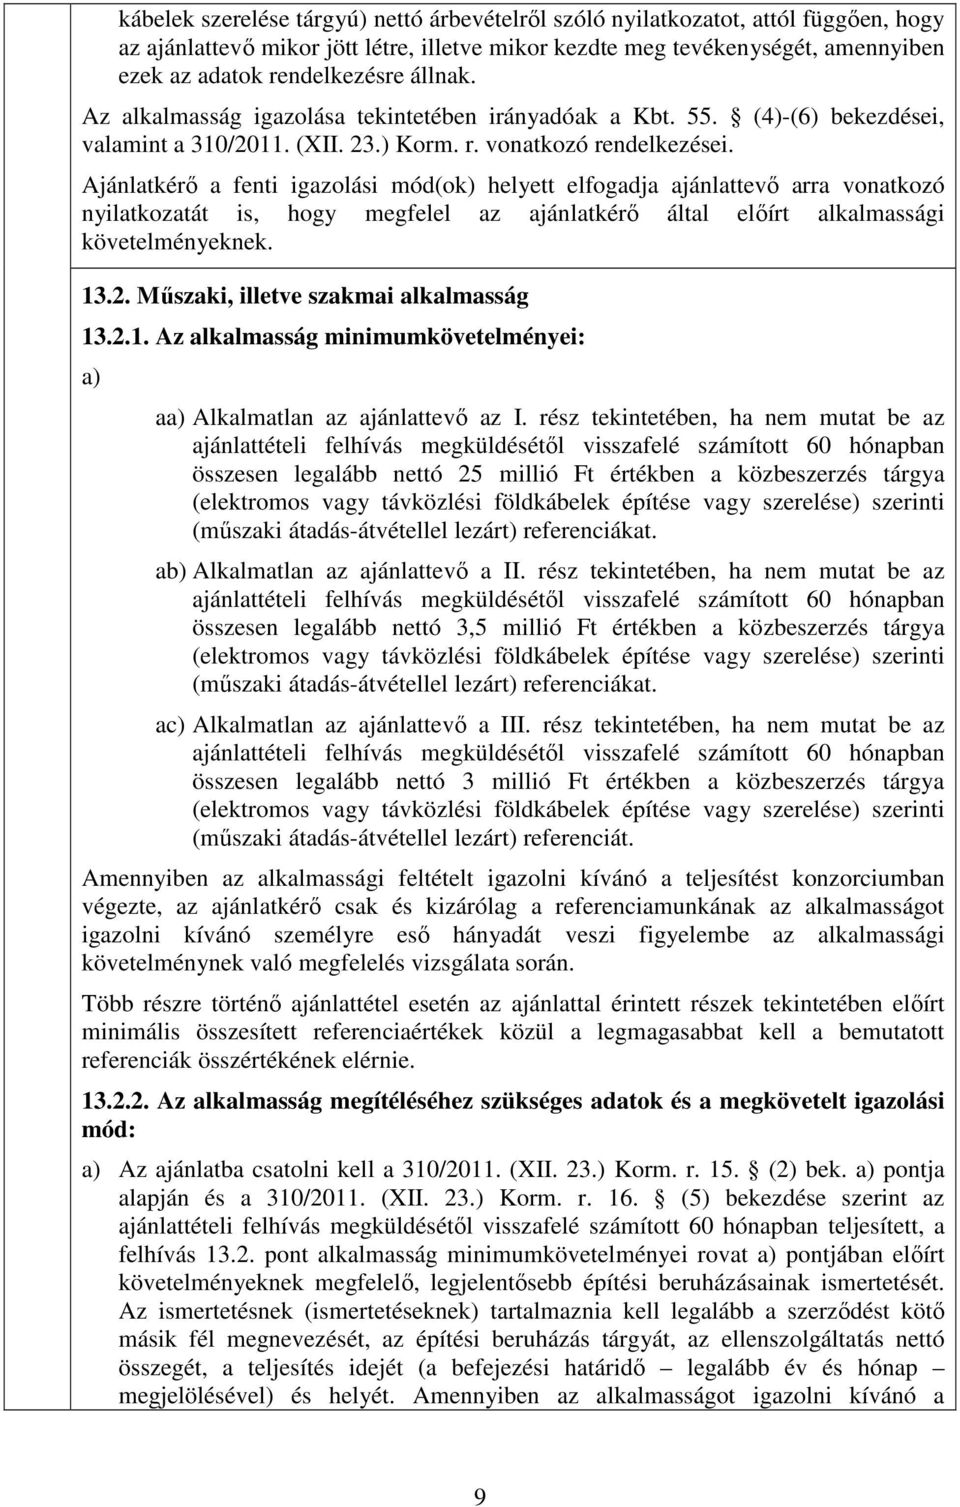 Ajánlatkérı a fenti igazolási mód(ok) helyett elfogadja ajánlattevı arra vonatkozó nyilatkozatát is, hogy megfelel az ajánlatkérı által elıírt alkalmassági követelményeknek. 13.2.